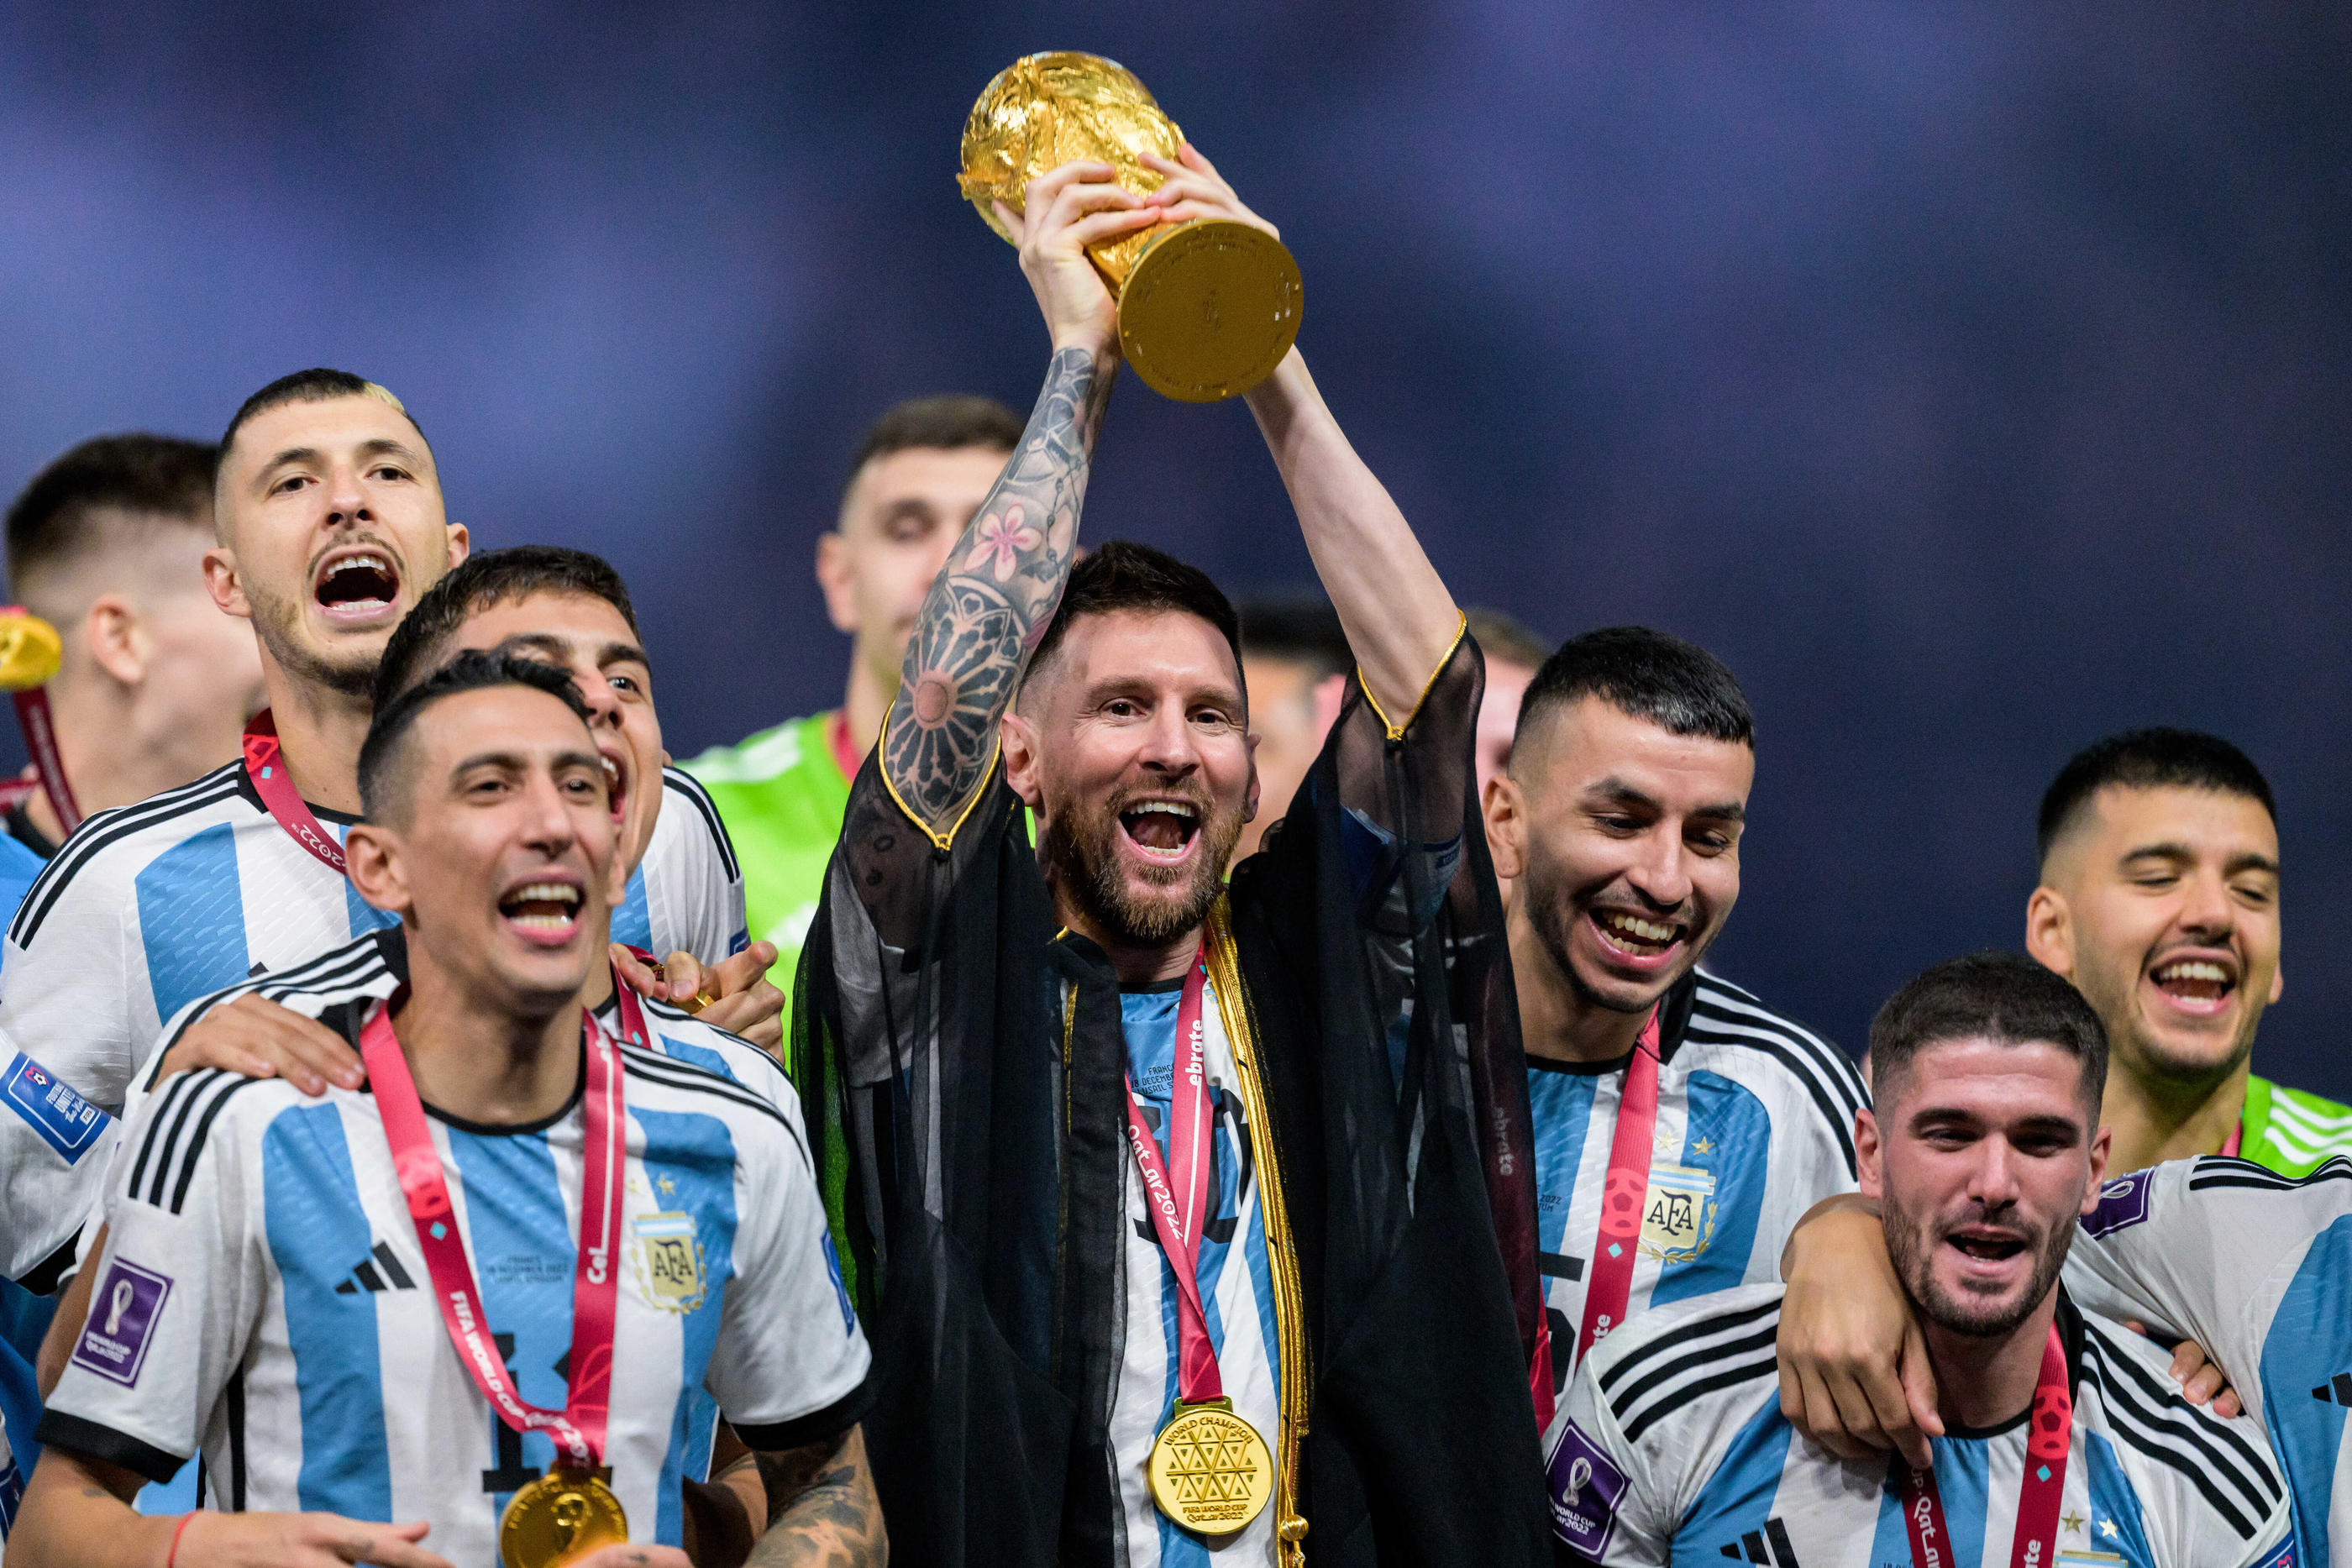 Coupe du monde 2018: Le vrai trophée du Mondial est déjà de retour